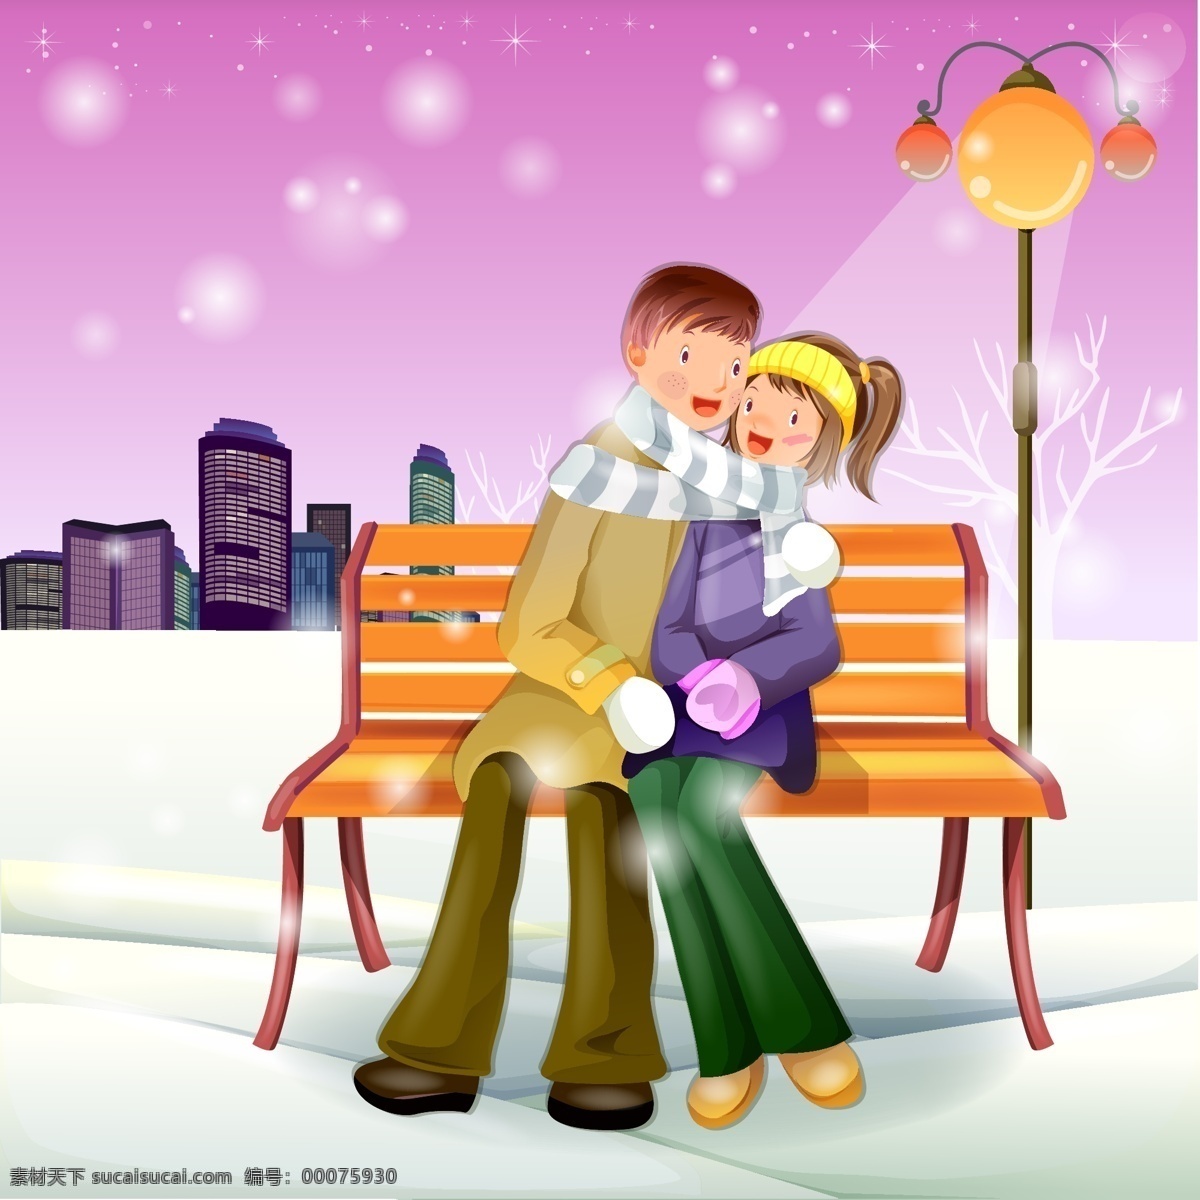 情侣 相 拥 坐在 长椅 上 矢量 城市 灯光 路灯 圣诞节 时尚情侣 围巾 星空 星星 模板下载 雪花 矢量图 矢量人物